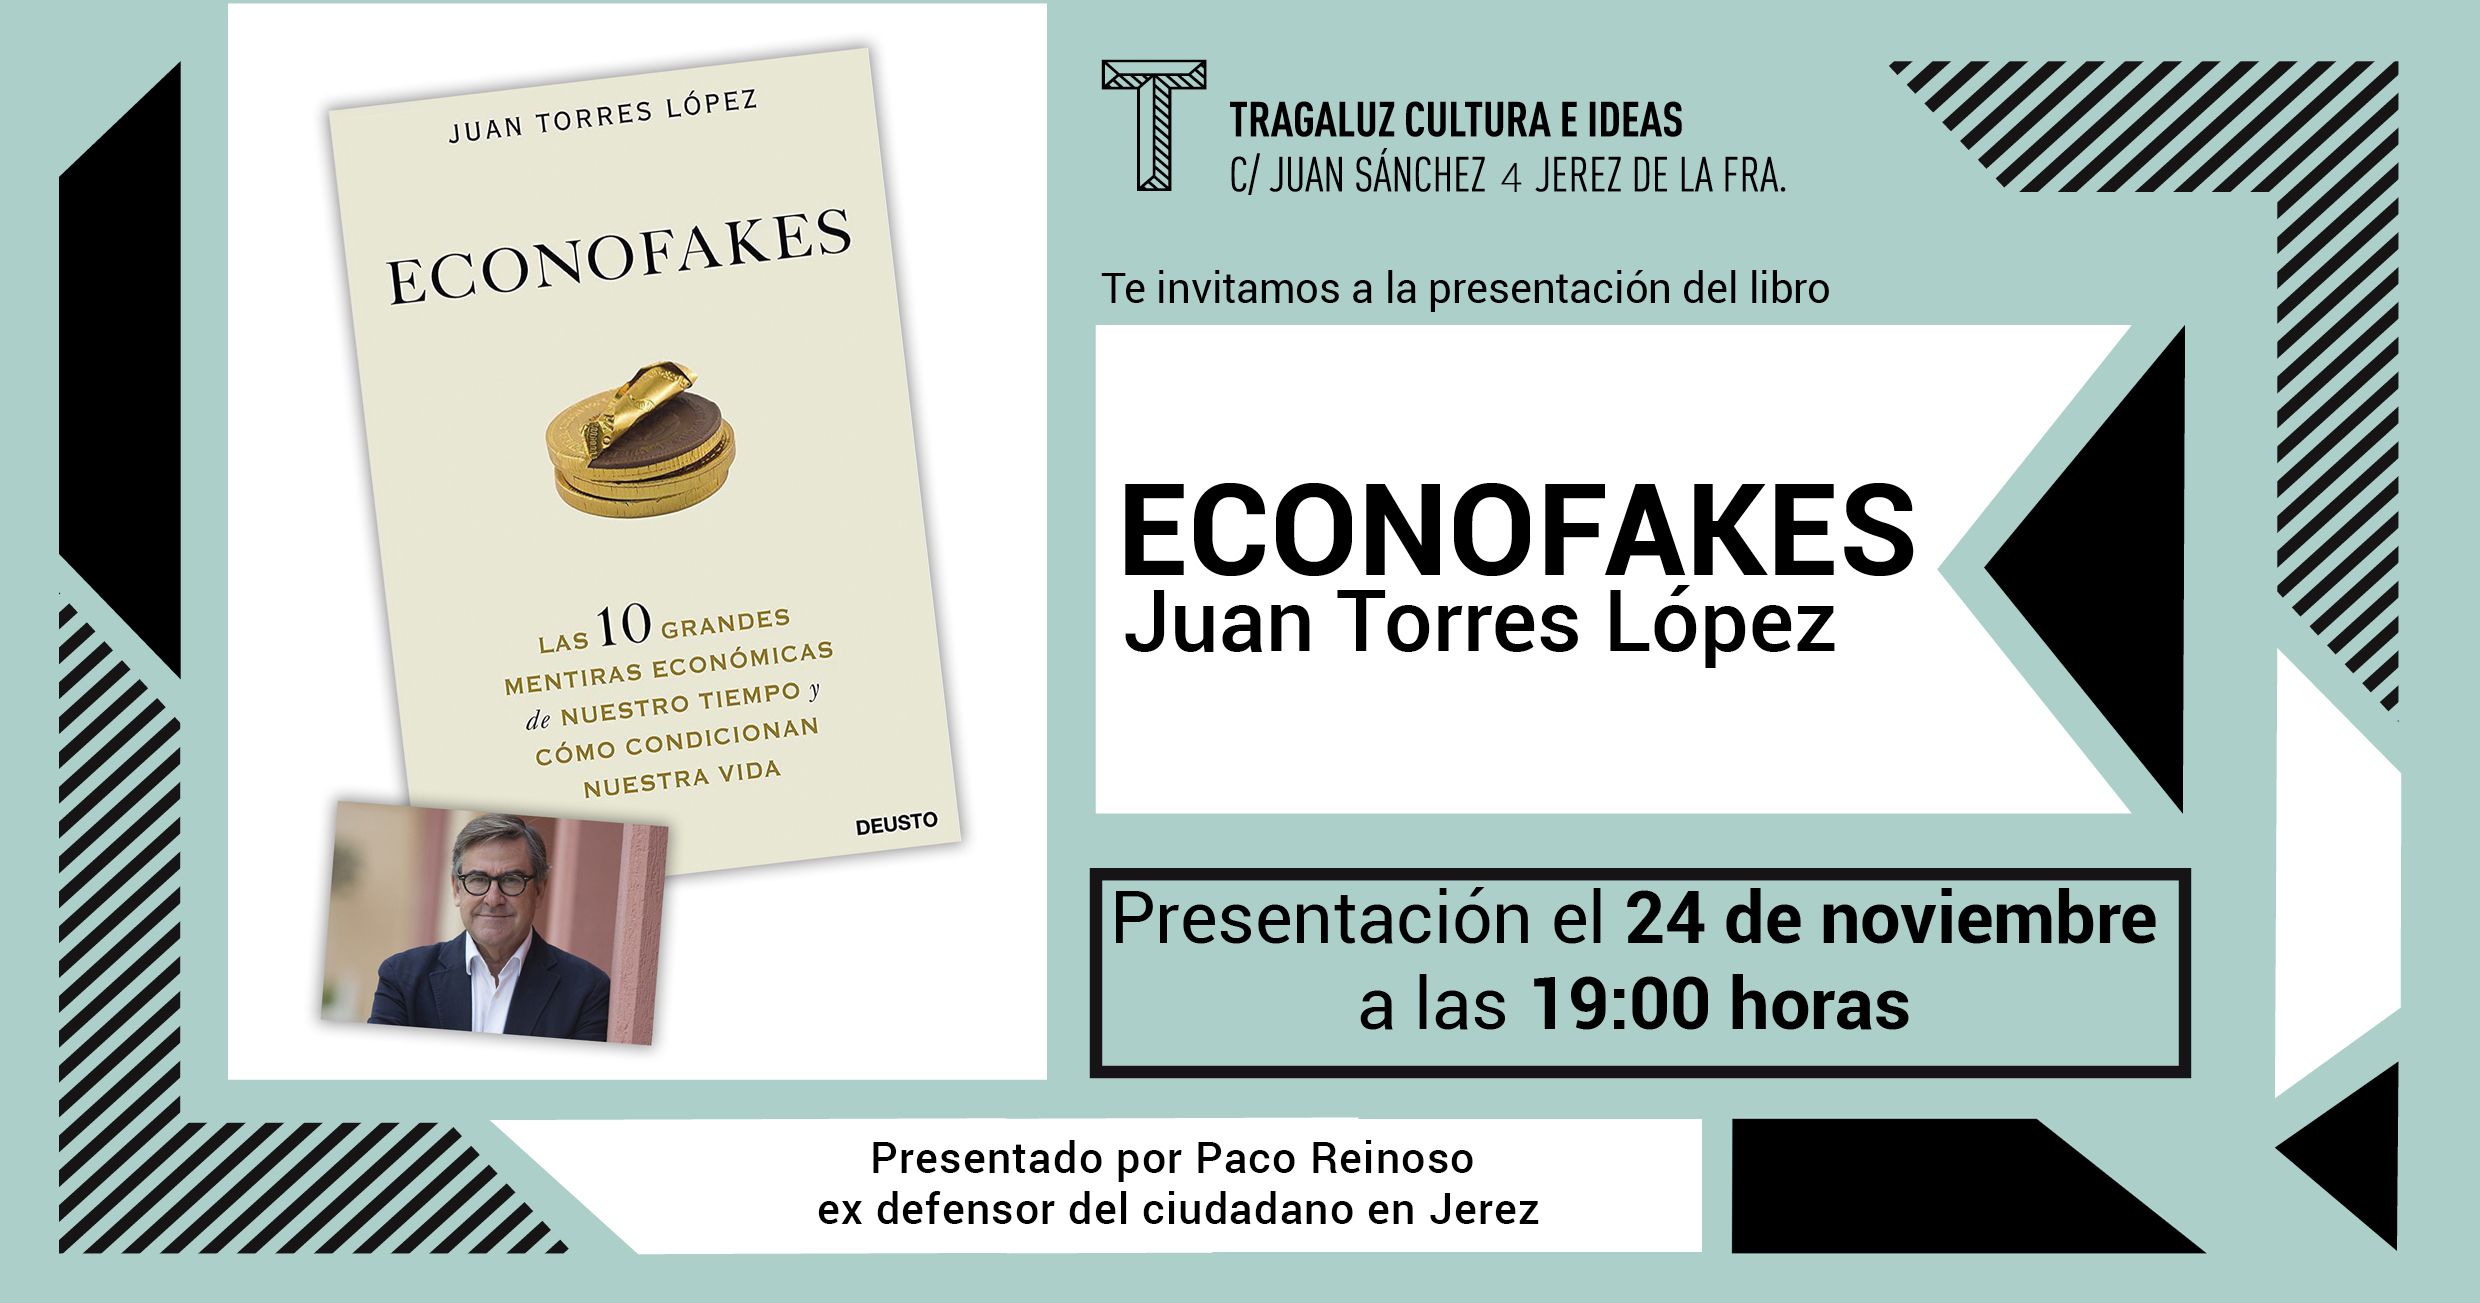 El catedrático Juan Torres López presenta en Tragaluz 'Econofakes', sobre las mentiras económicas de nuestro tiempo